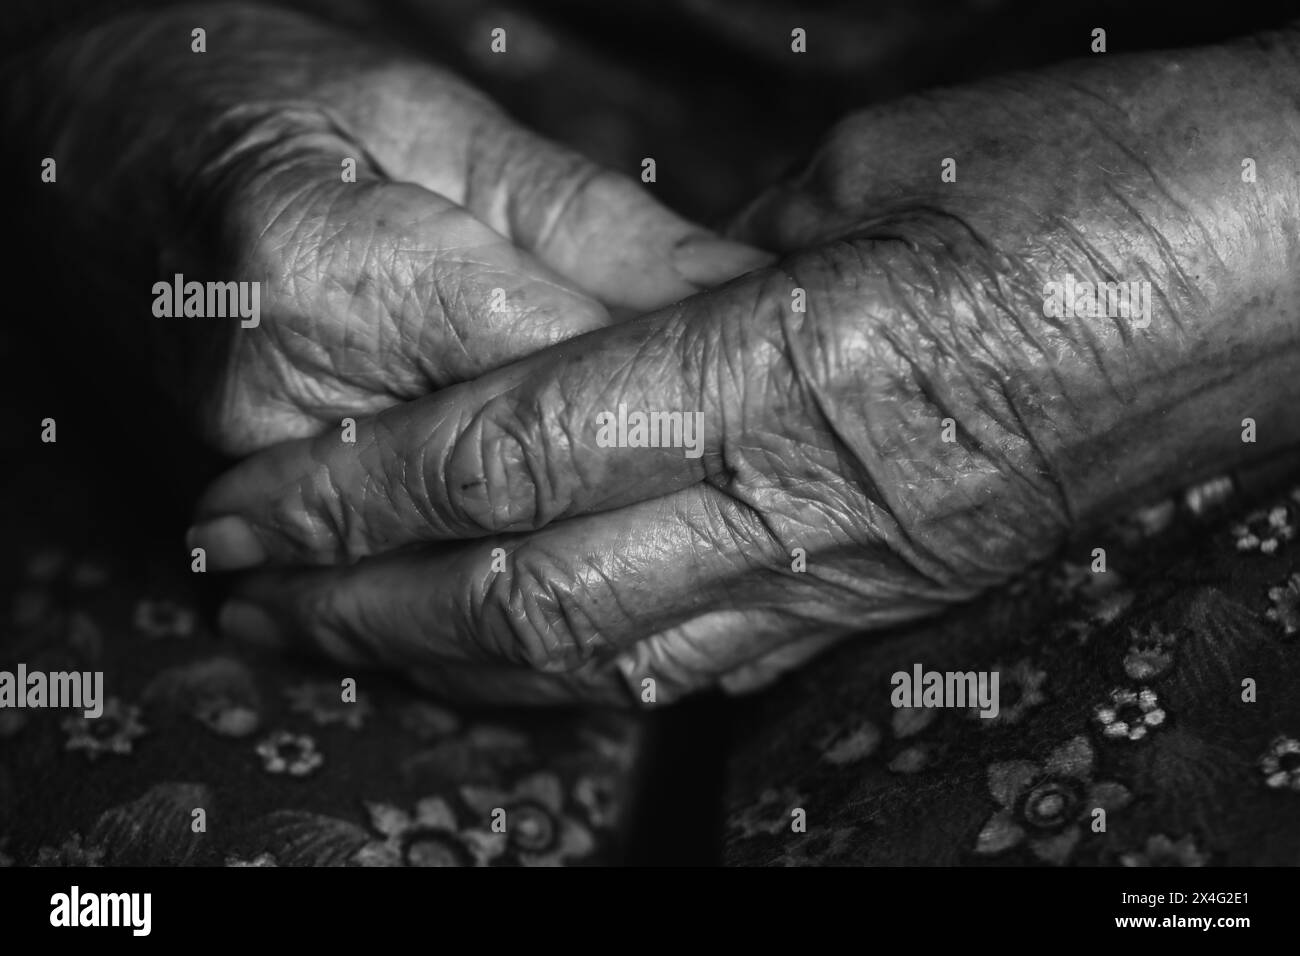 Les mains de la femme âgée. Mains de vieille femme en noir et blanc Banque D'Images